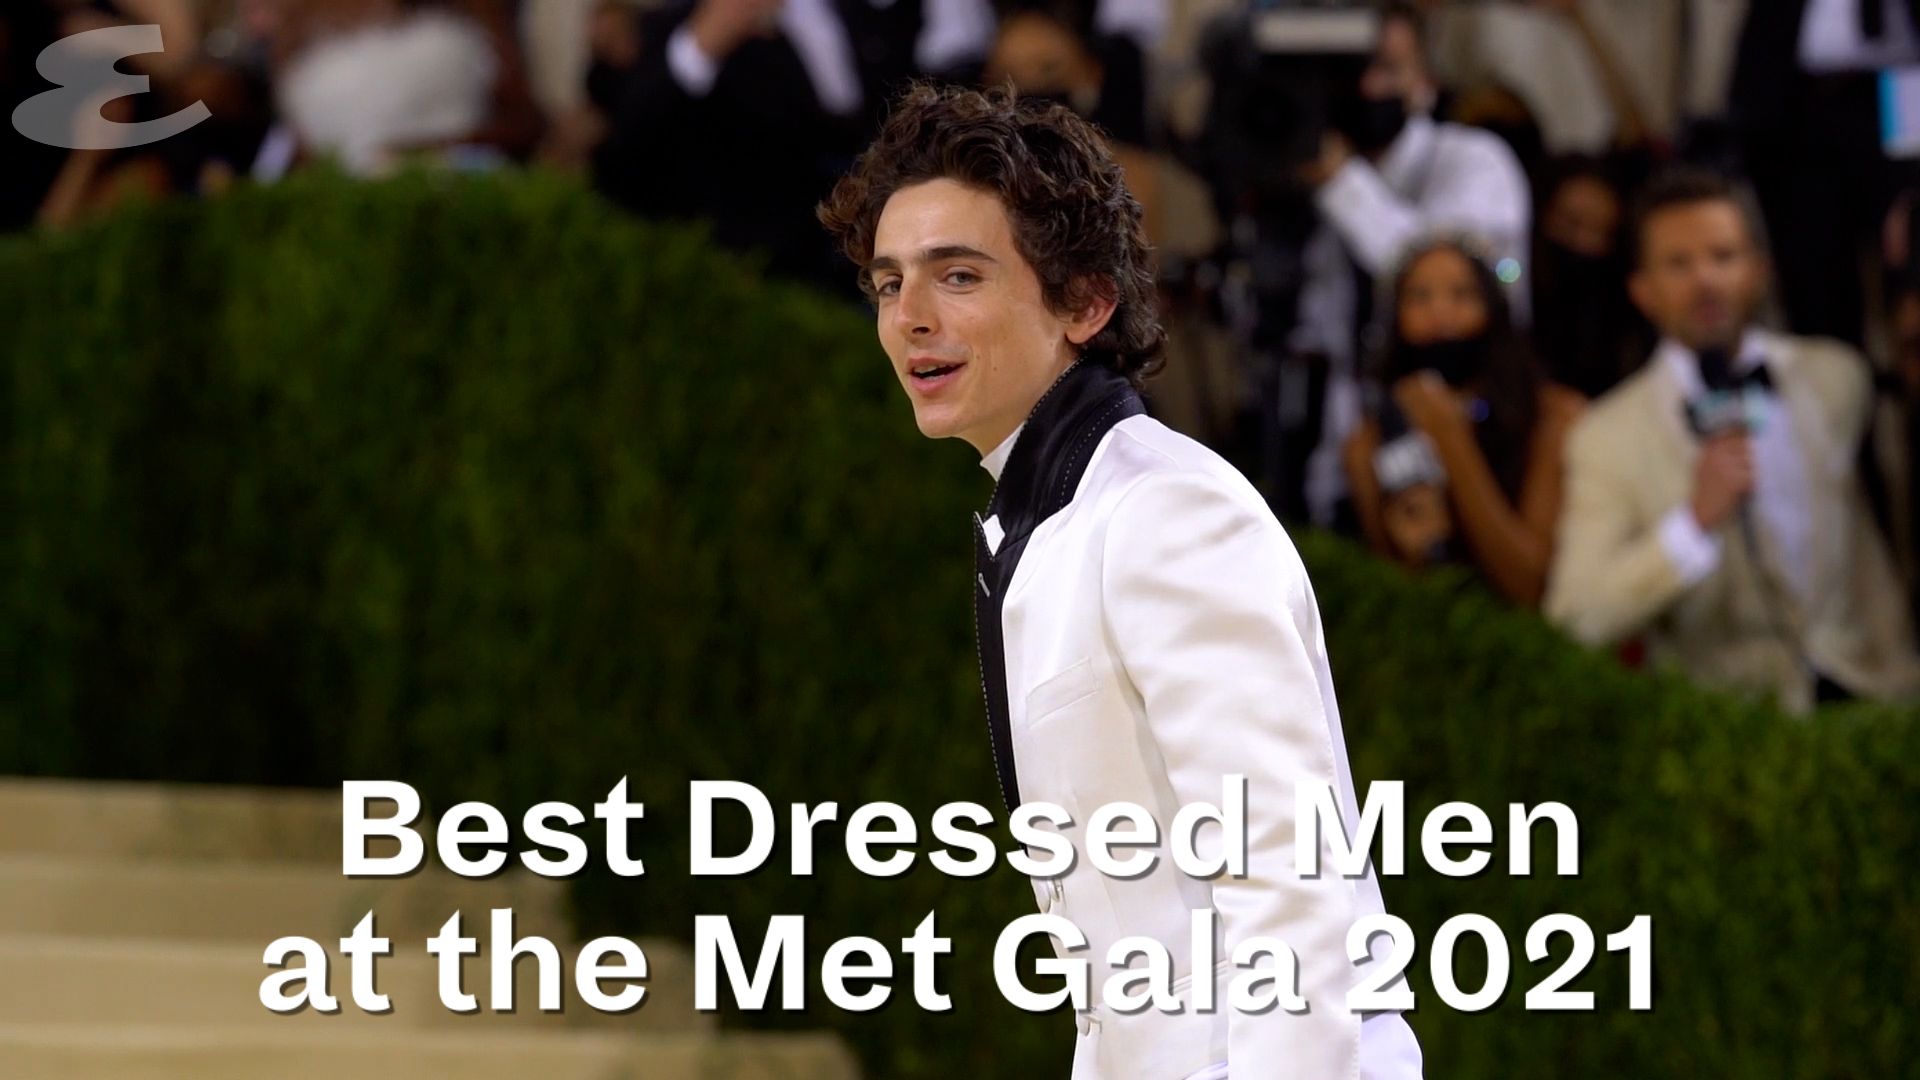 The Best-Dressed Men of the Met Gala 2021